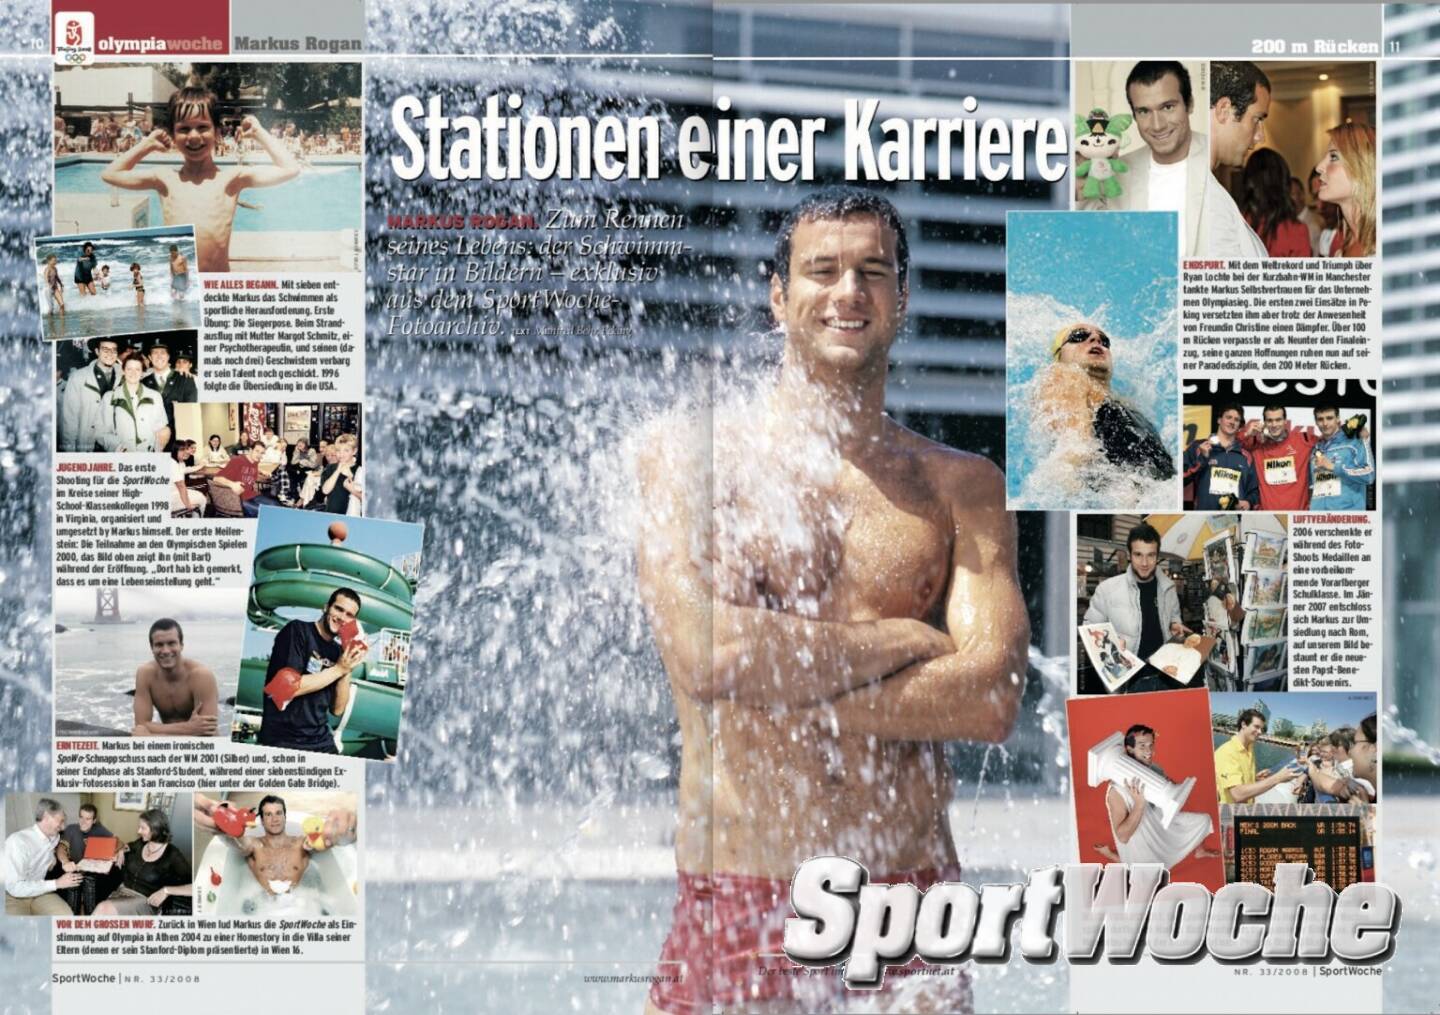 NÖ-Kalender der SportWoche, Tag 3: Markus Rogan ist mehrfacher NÖ-Sportler des Jahres, Österreichs Sportler des Jahres“ 2004, Ex-Welt- und Europarekordler 200 m Rücken, Europarekordler 200 m Lagen (jeweils Kurzbahn). Medaillen bei Großereignissen: 33 (10 Gold, 18 Silber, 5 Bronze)